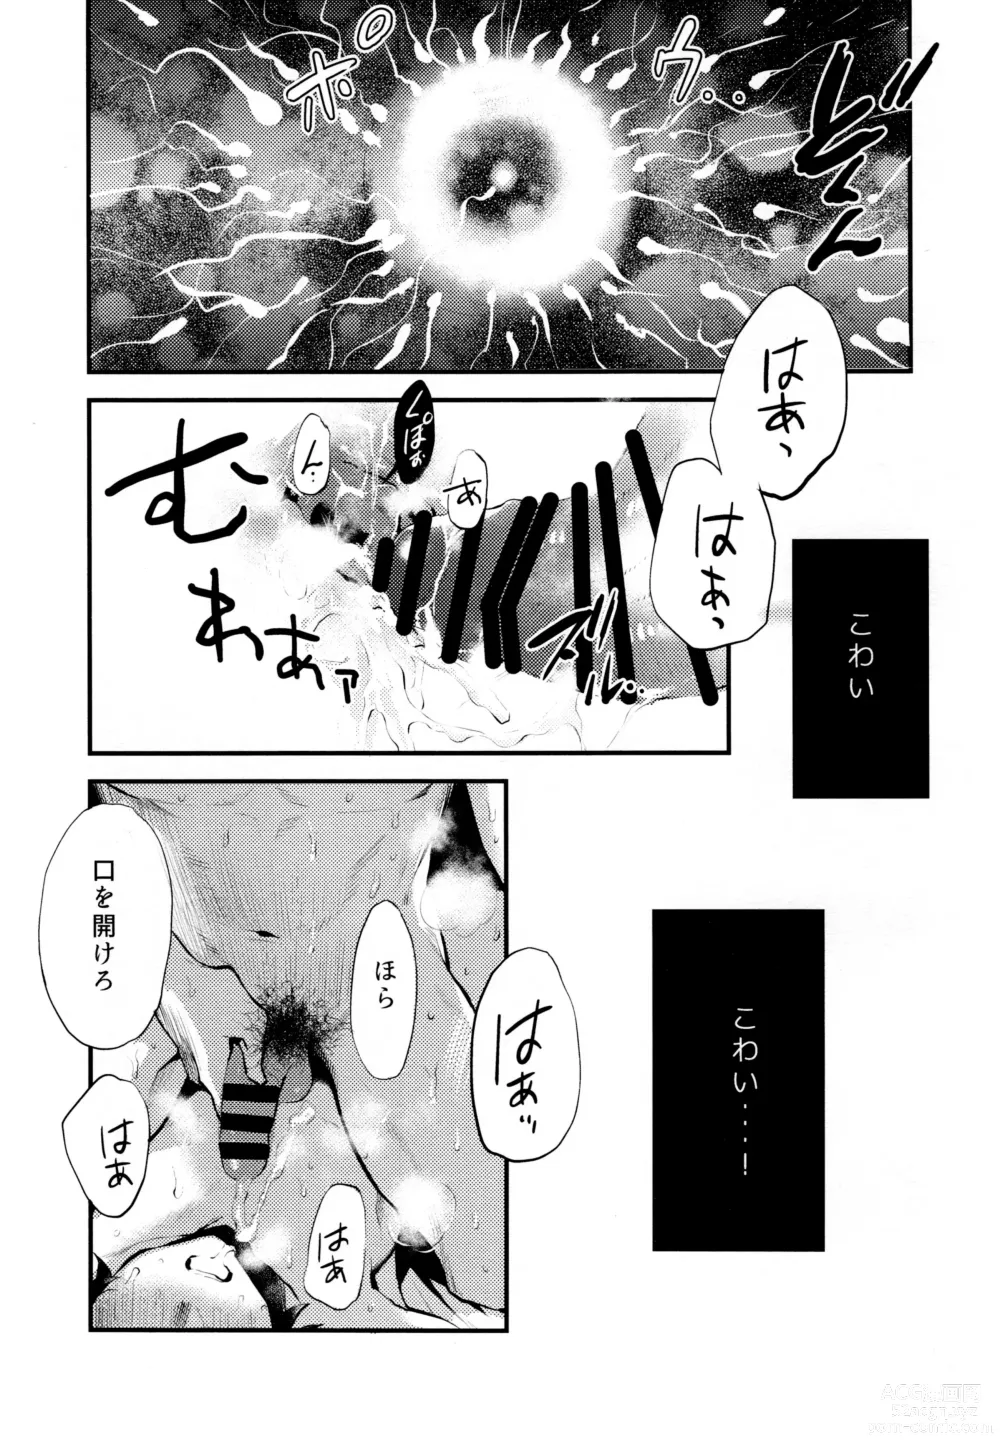 Page 31 of doujinshi ] Warui Hito.